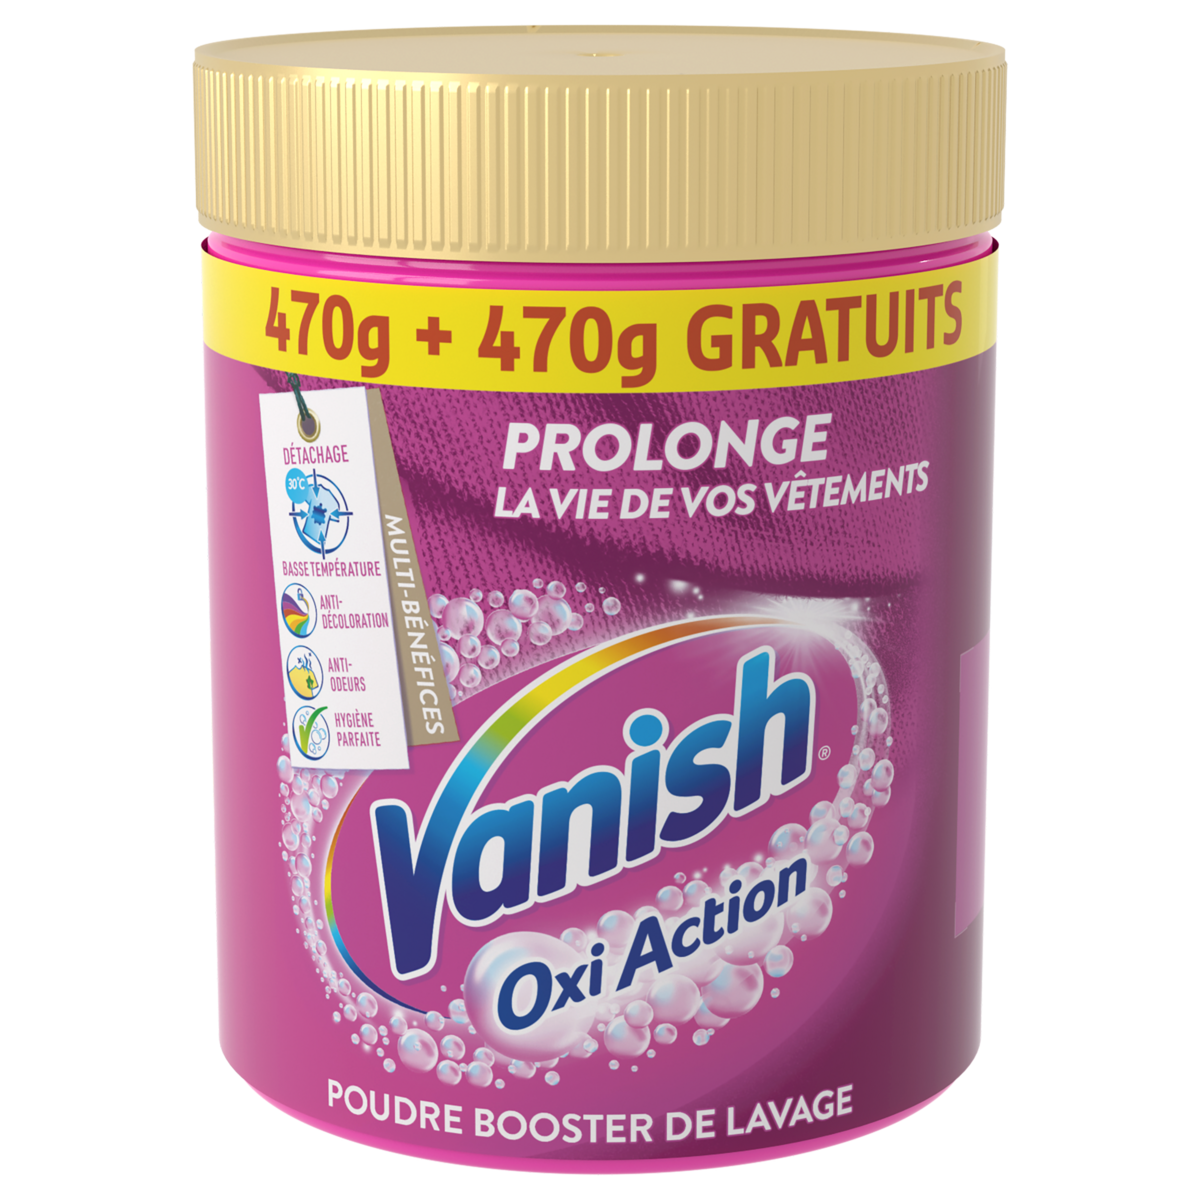 VANISH Oxi Action poudre booster de lavage 470g+470g offert